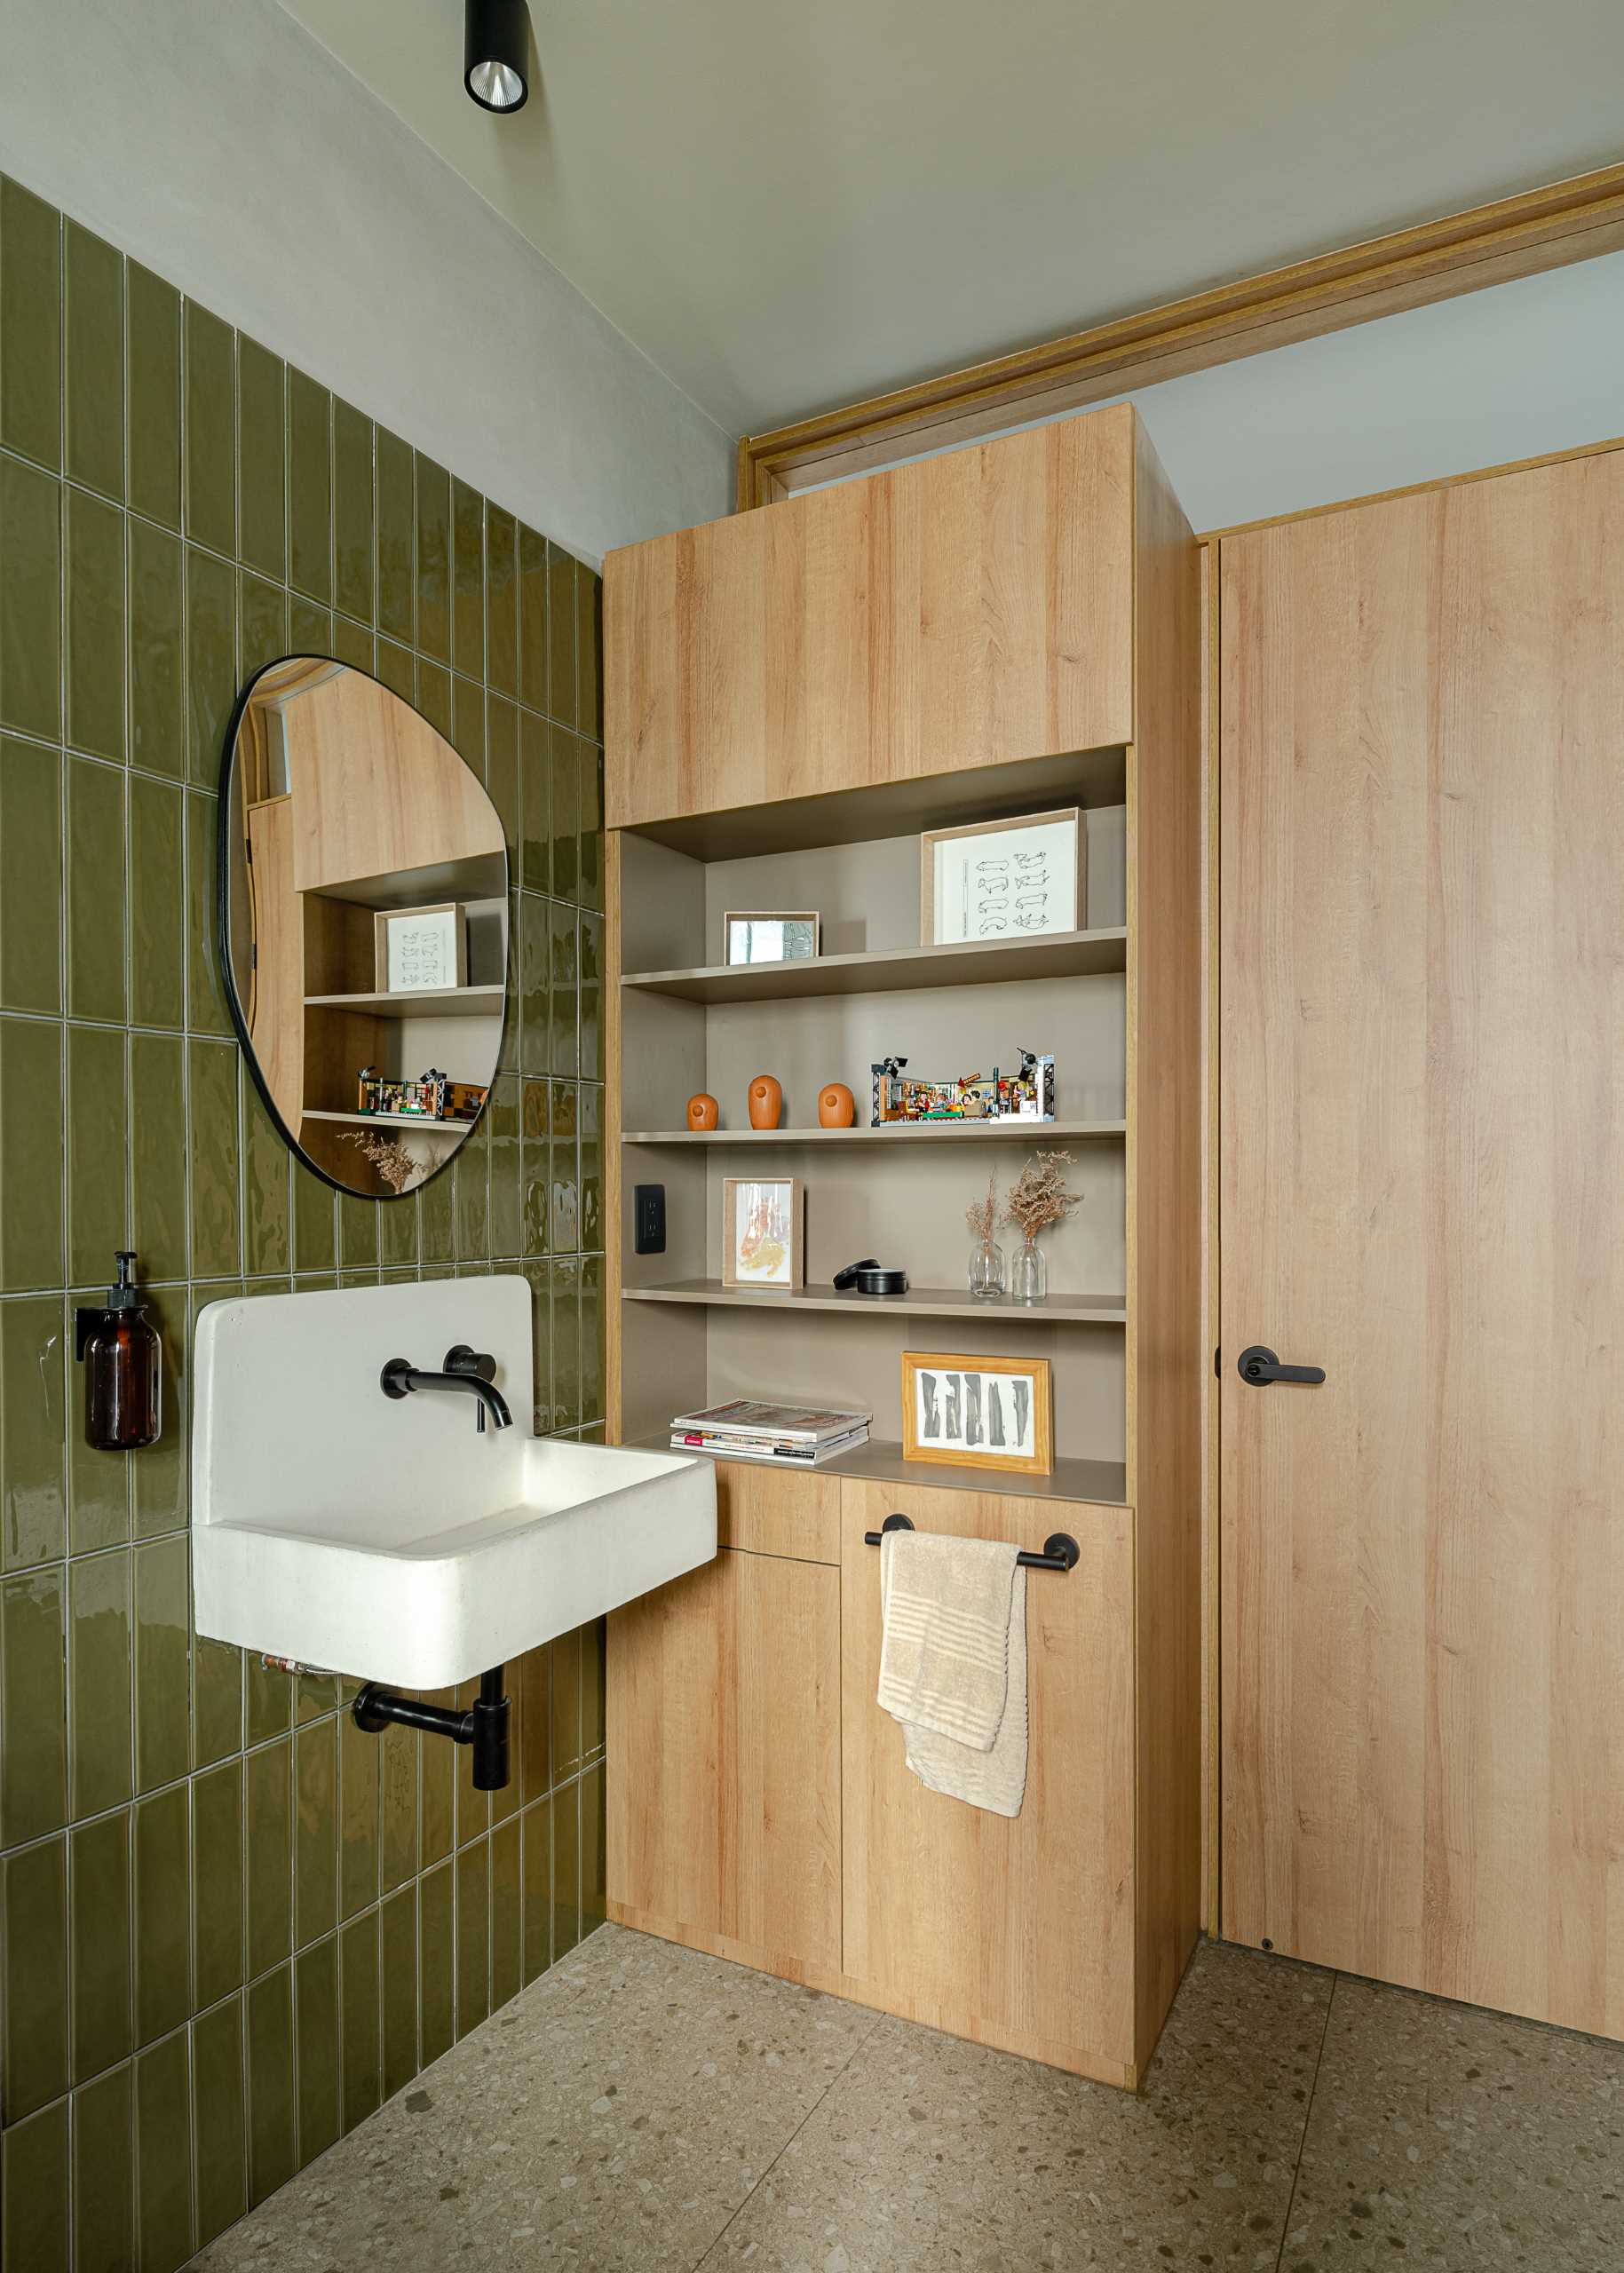 یک حمام مدرن با کاشی های دیوار سبز عمودی، یک حوضچه سفید، و یک واحد ذخیره سازی چوبی توکار با قفسه های باز.